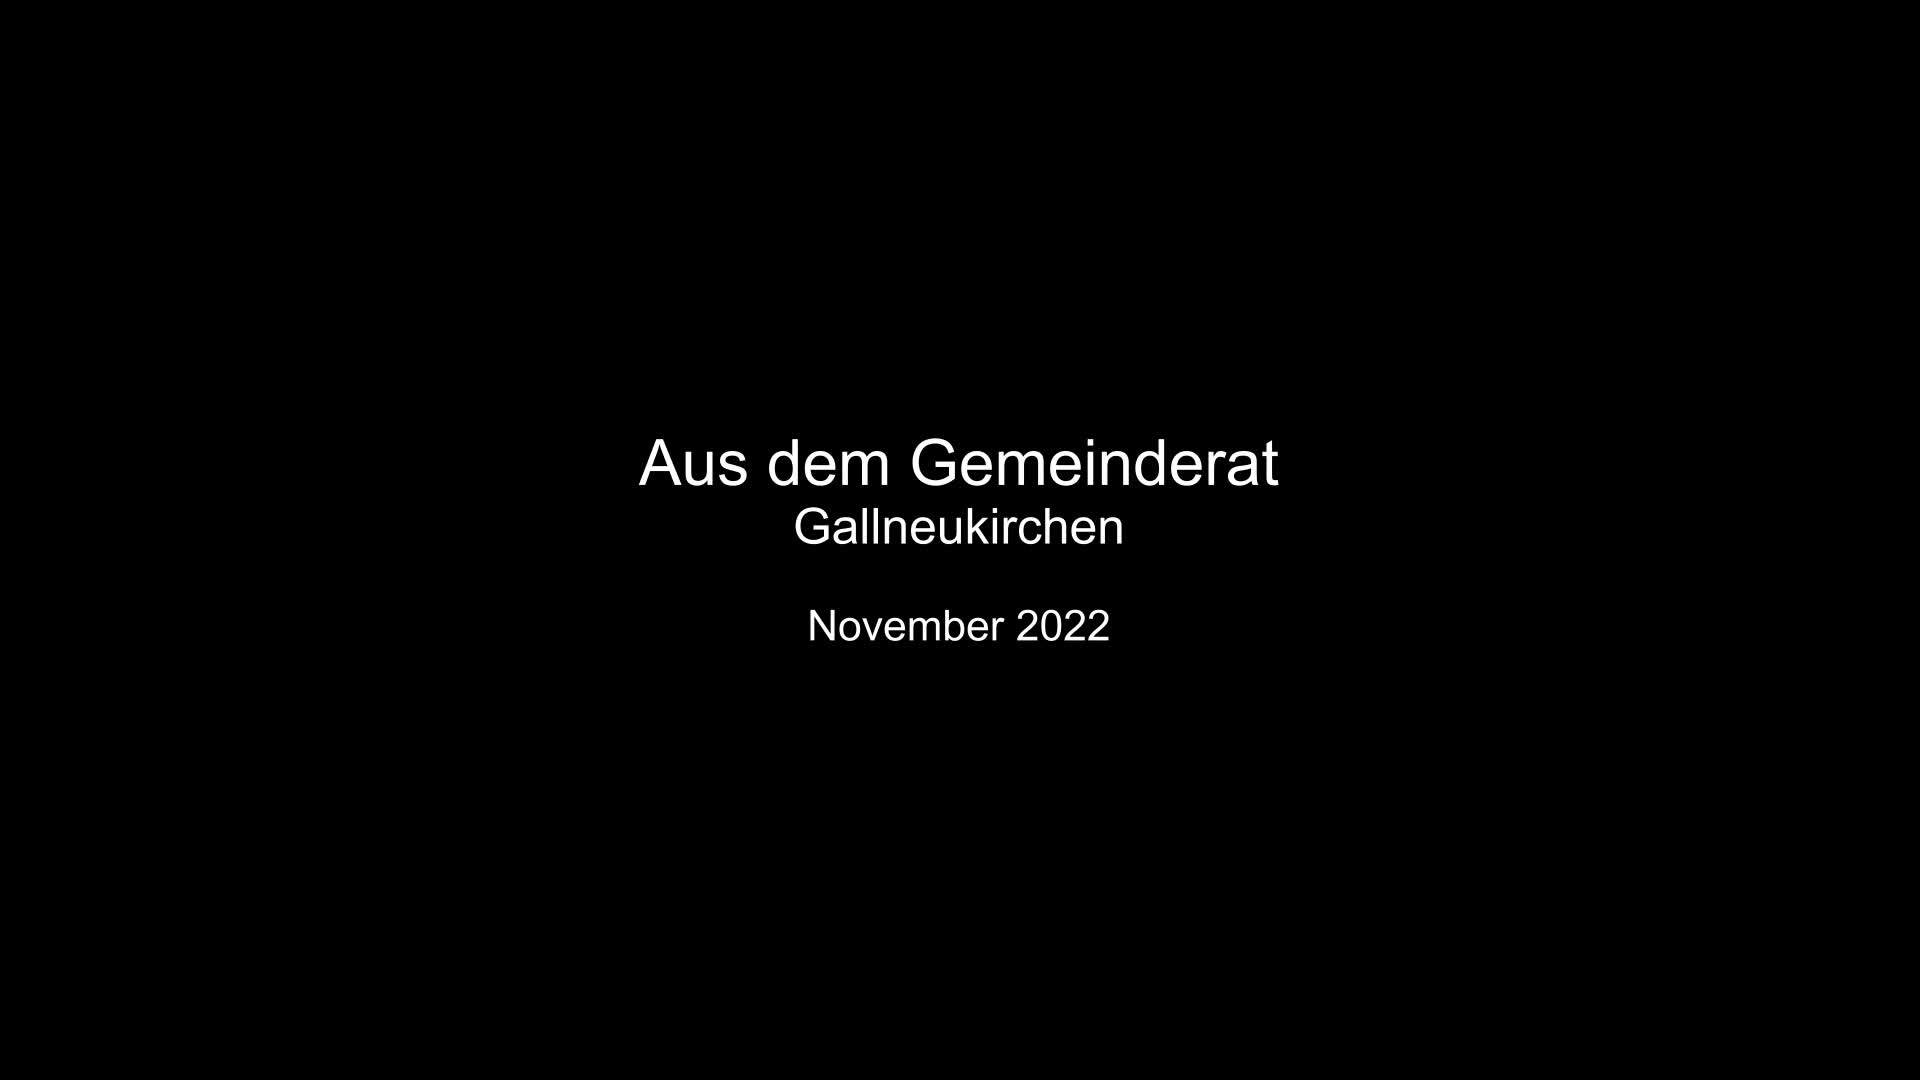 Aus dem Gemeinderat Gallneukirchen - November 2022